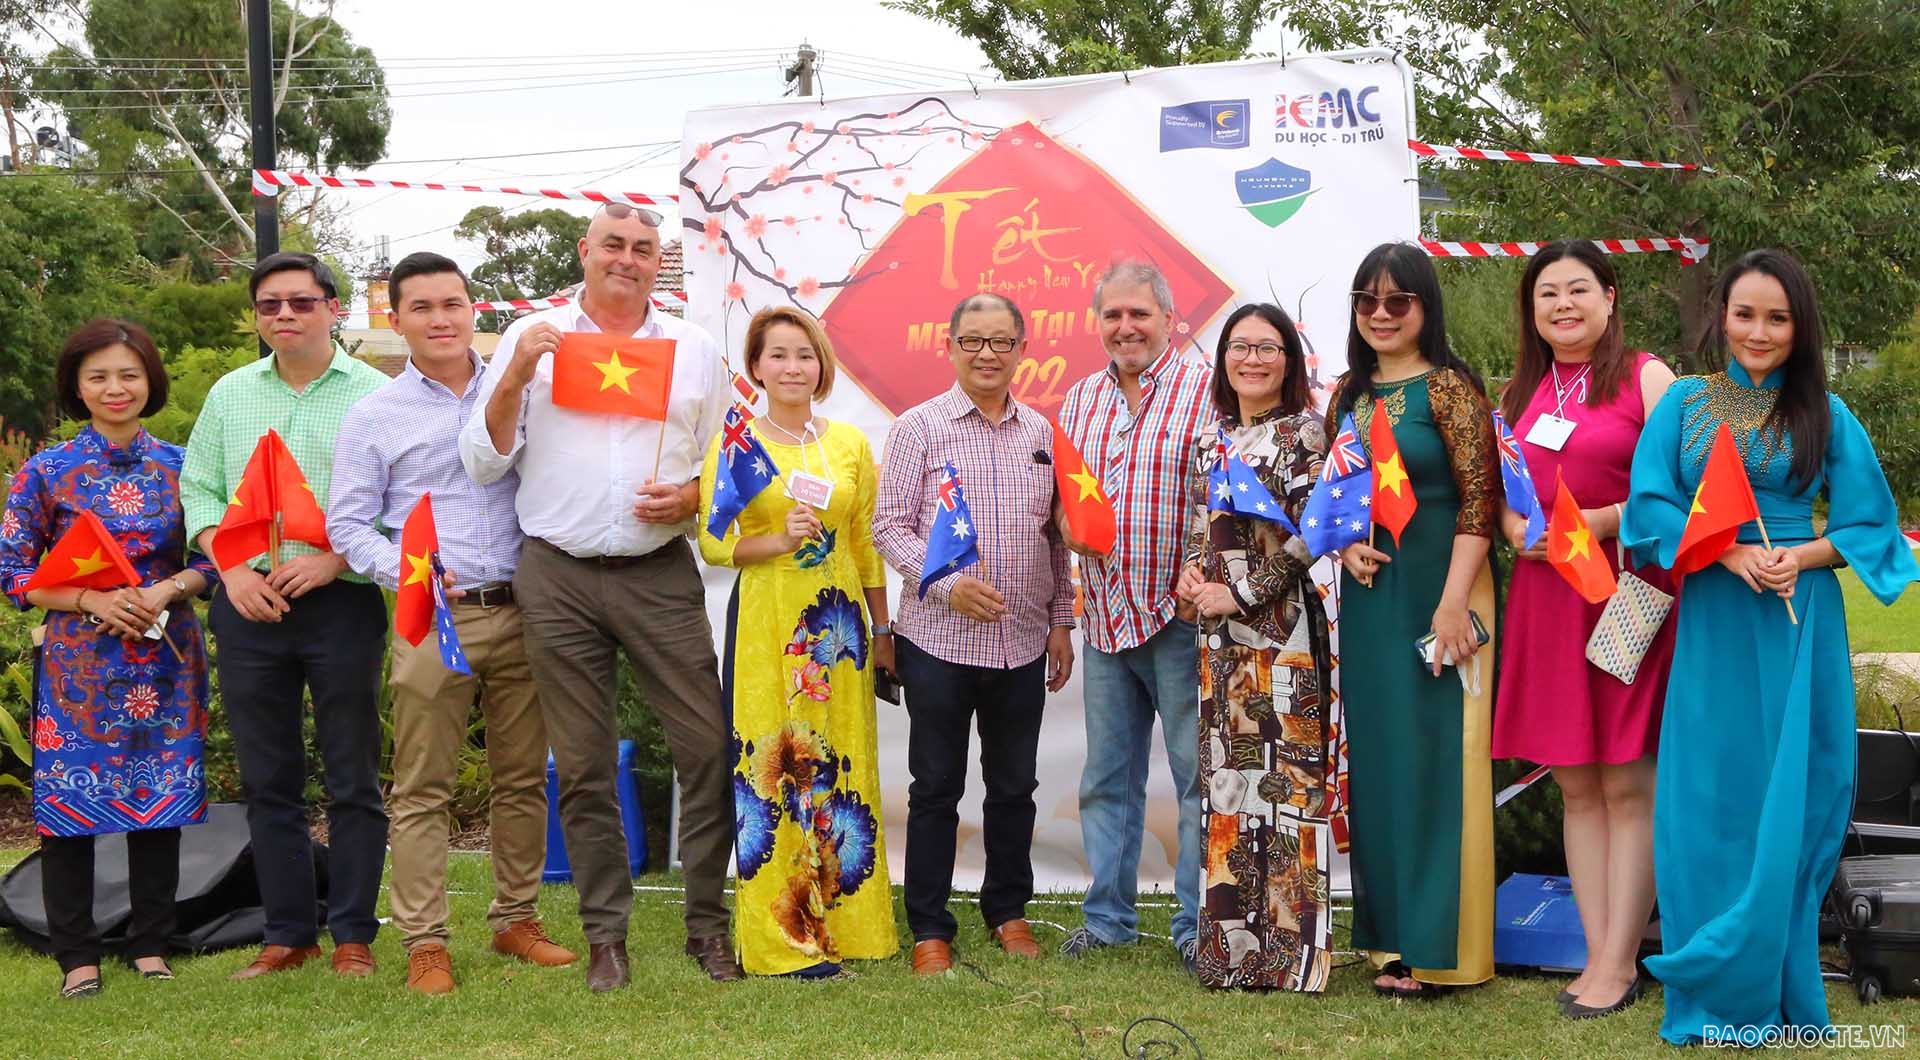 Chương trình ngày Tết của các gia đình Việt tại Melbourne là một trong nhiều sự kiện có ý nghĩa kết nối, gắn kết cộng đồng.